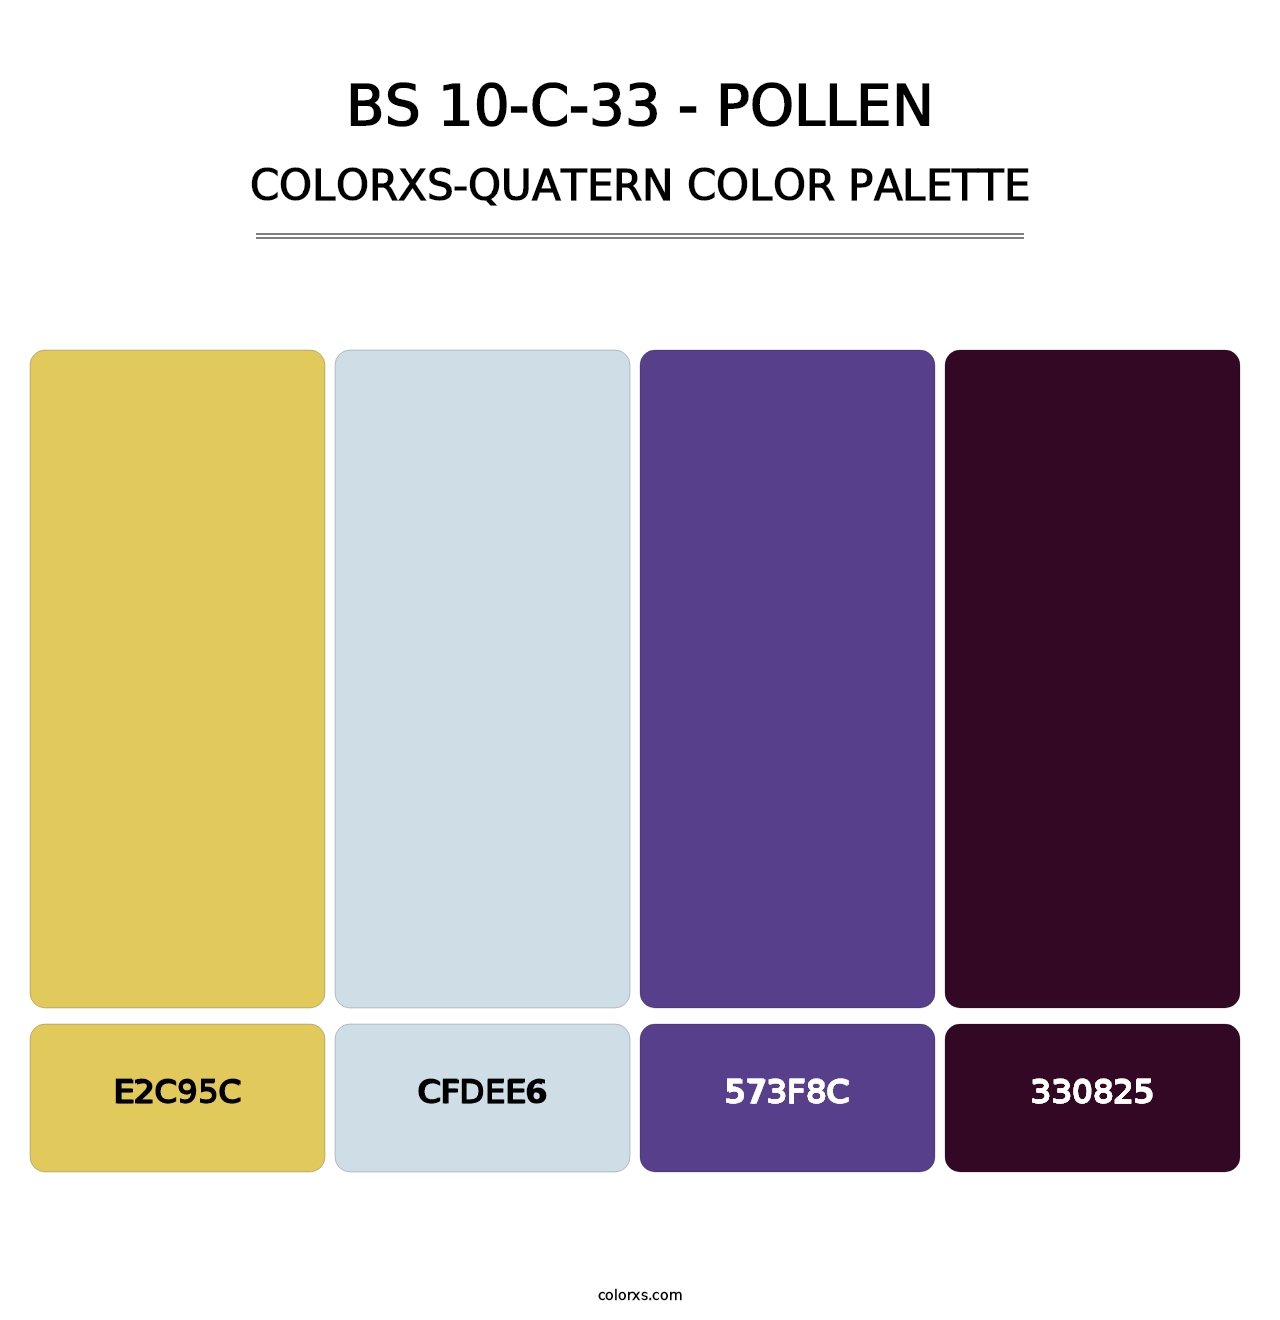 BS 10-C-33 - Pollen - Colorxs Quatern Palette